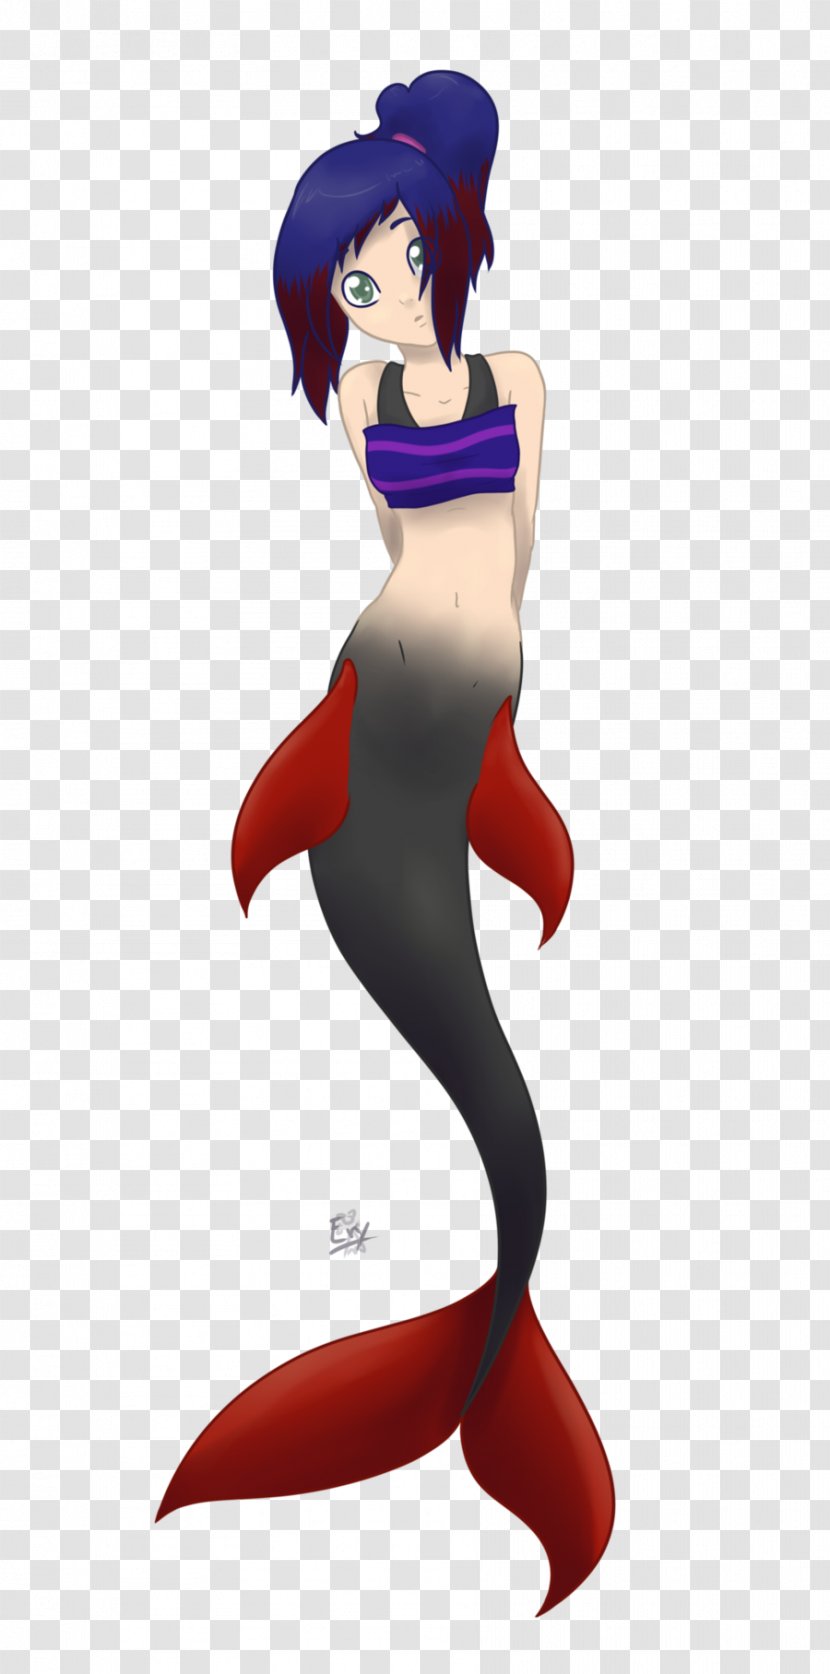 Mermaid Illustration Cartoon Figurine - Shark Woman Transparent PNG